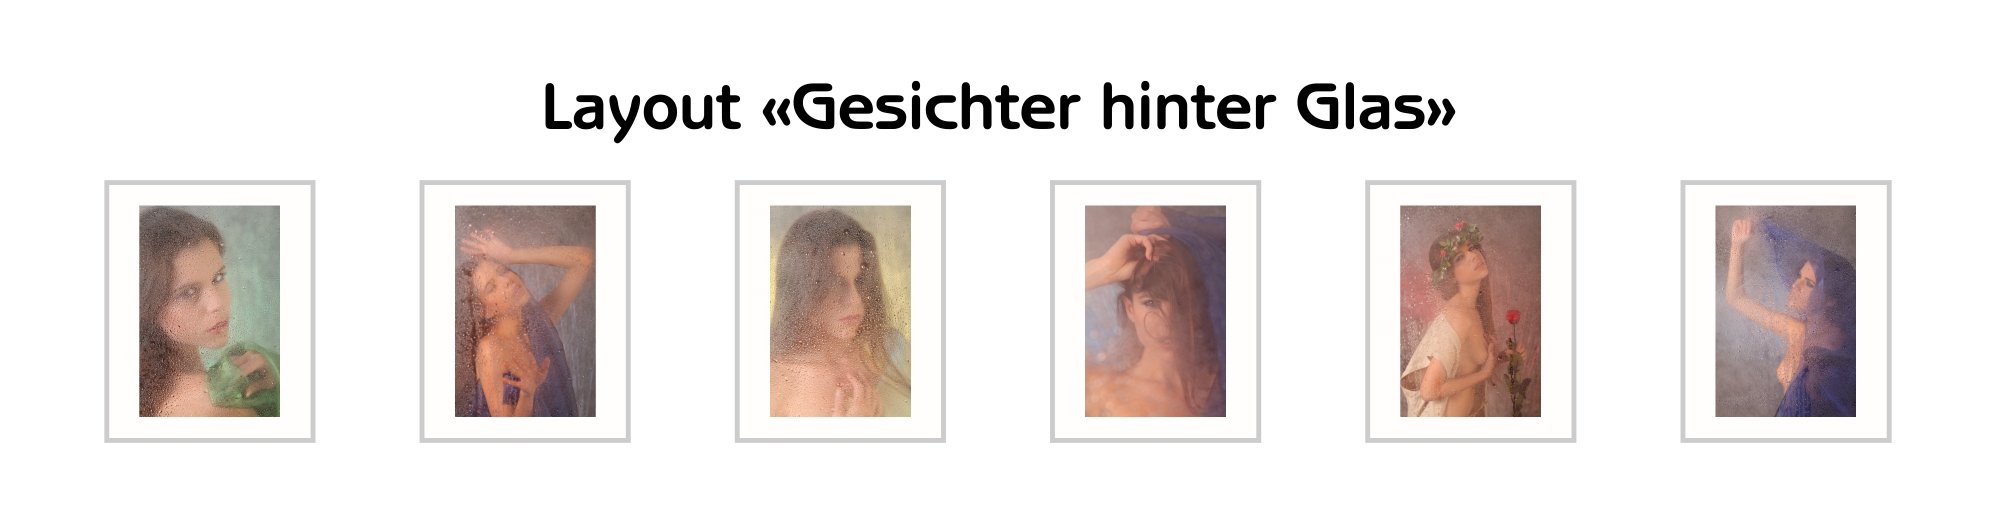 image-12141206-Gesichter-hinter-Glas-16790.jpg